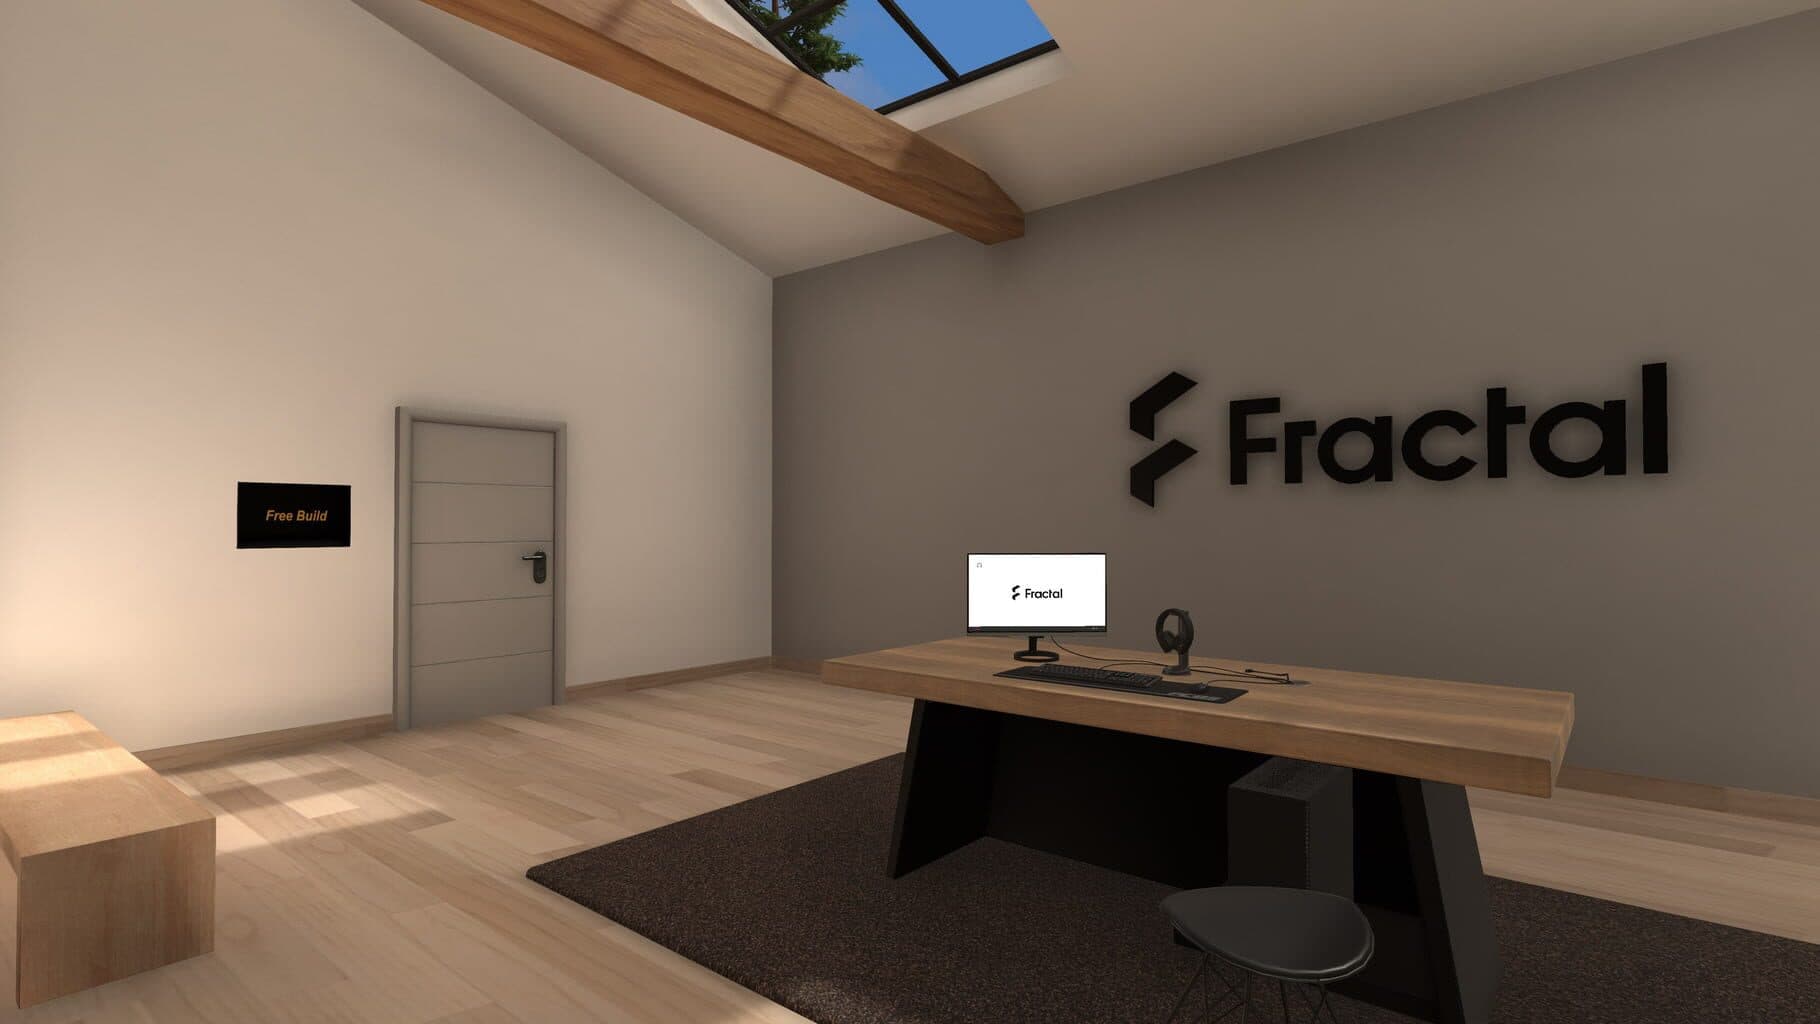 PC Building Simulator: Fractal Workshop Image